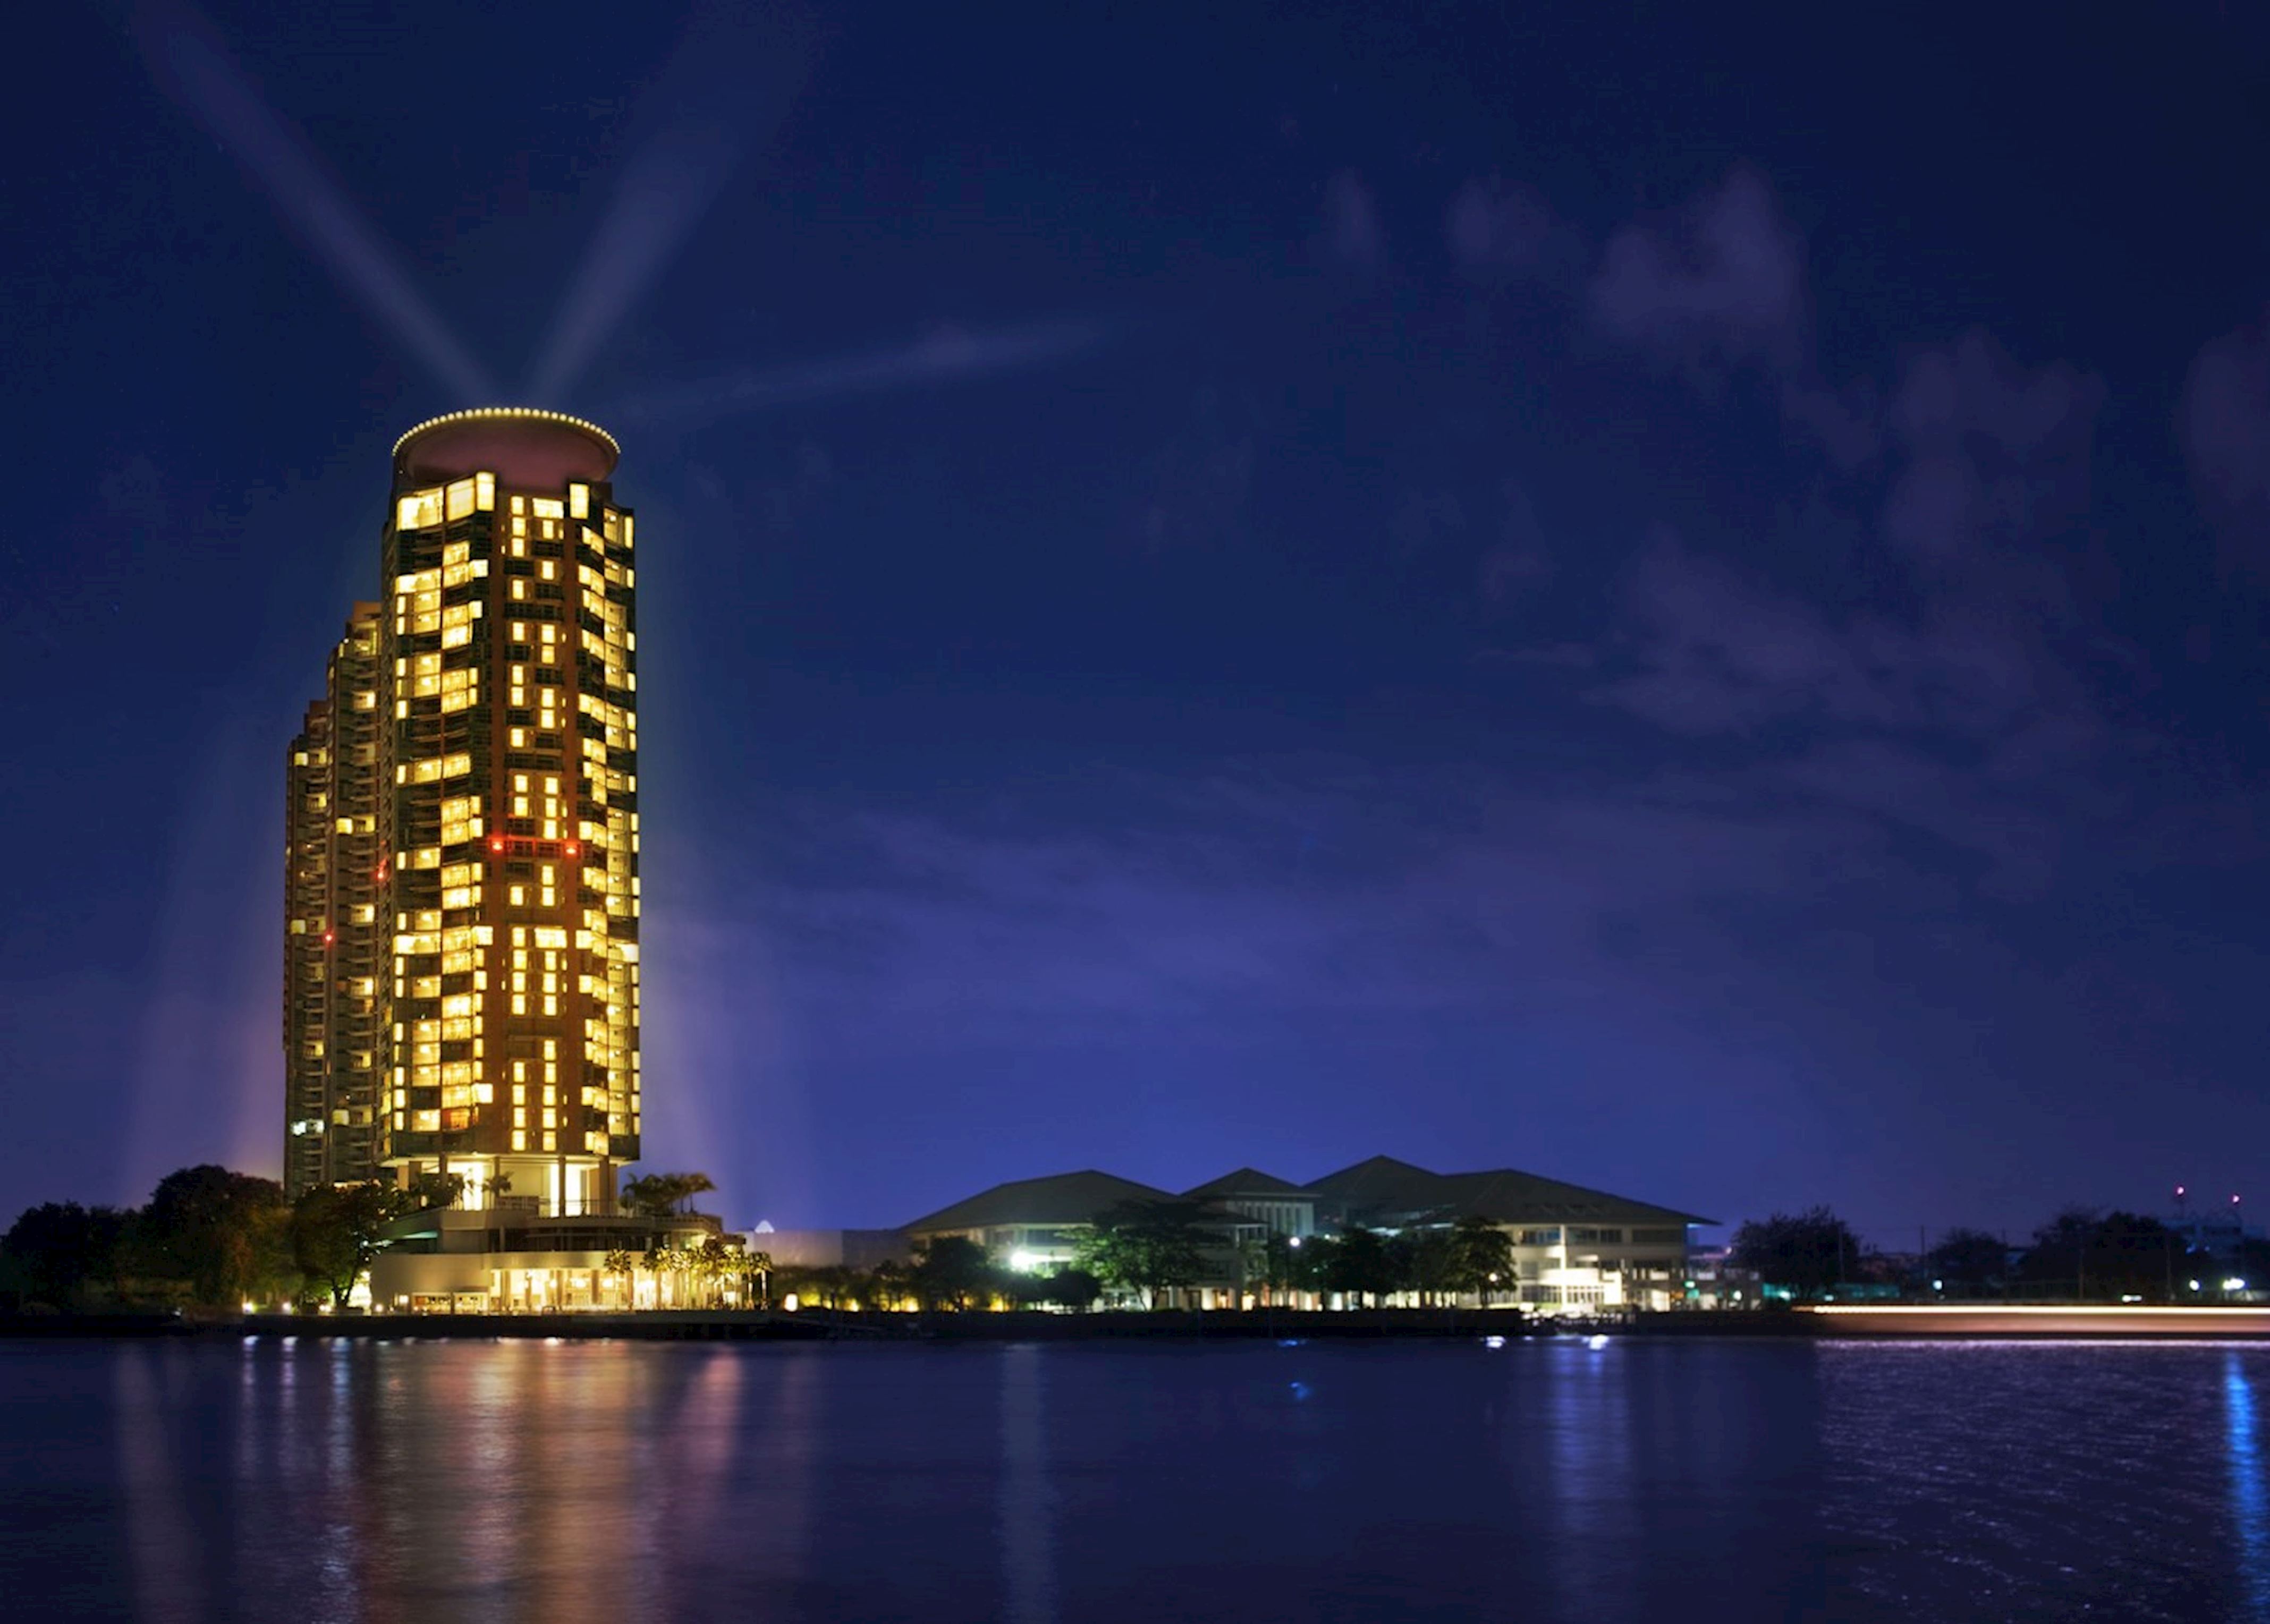 Chatrium Hotel Riverside Bangkok Audley Travel Uk